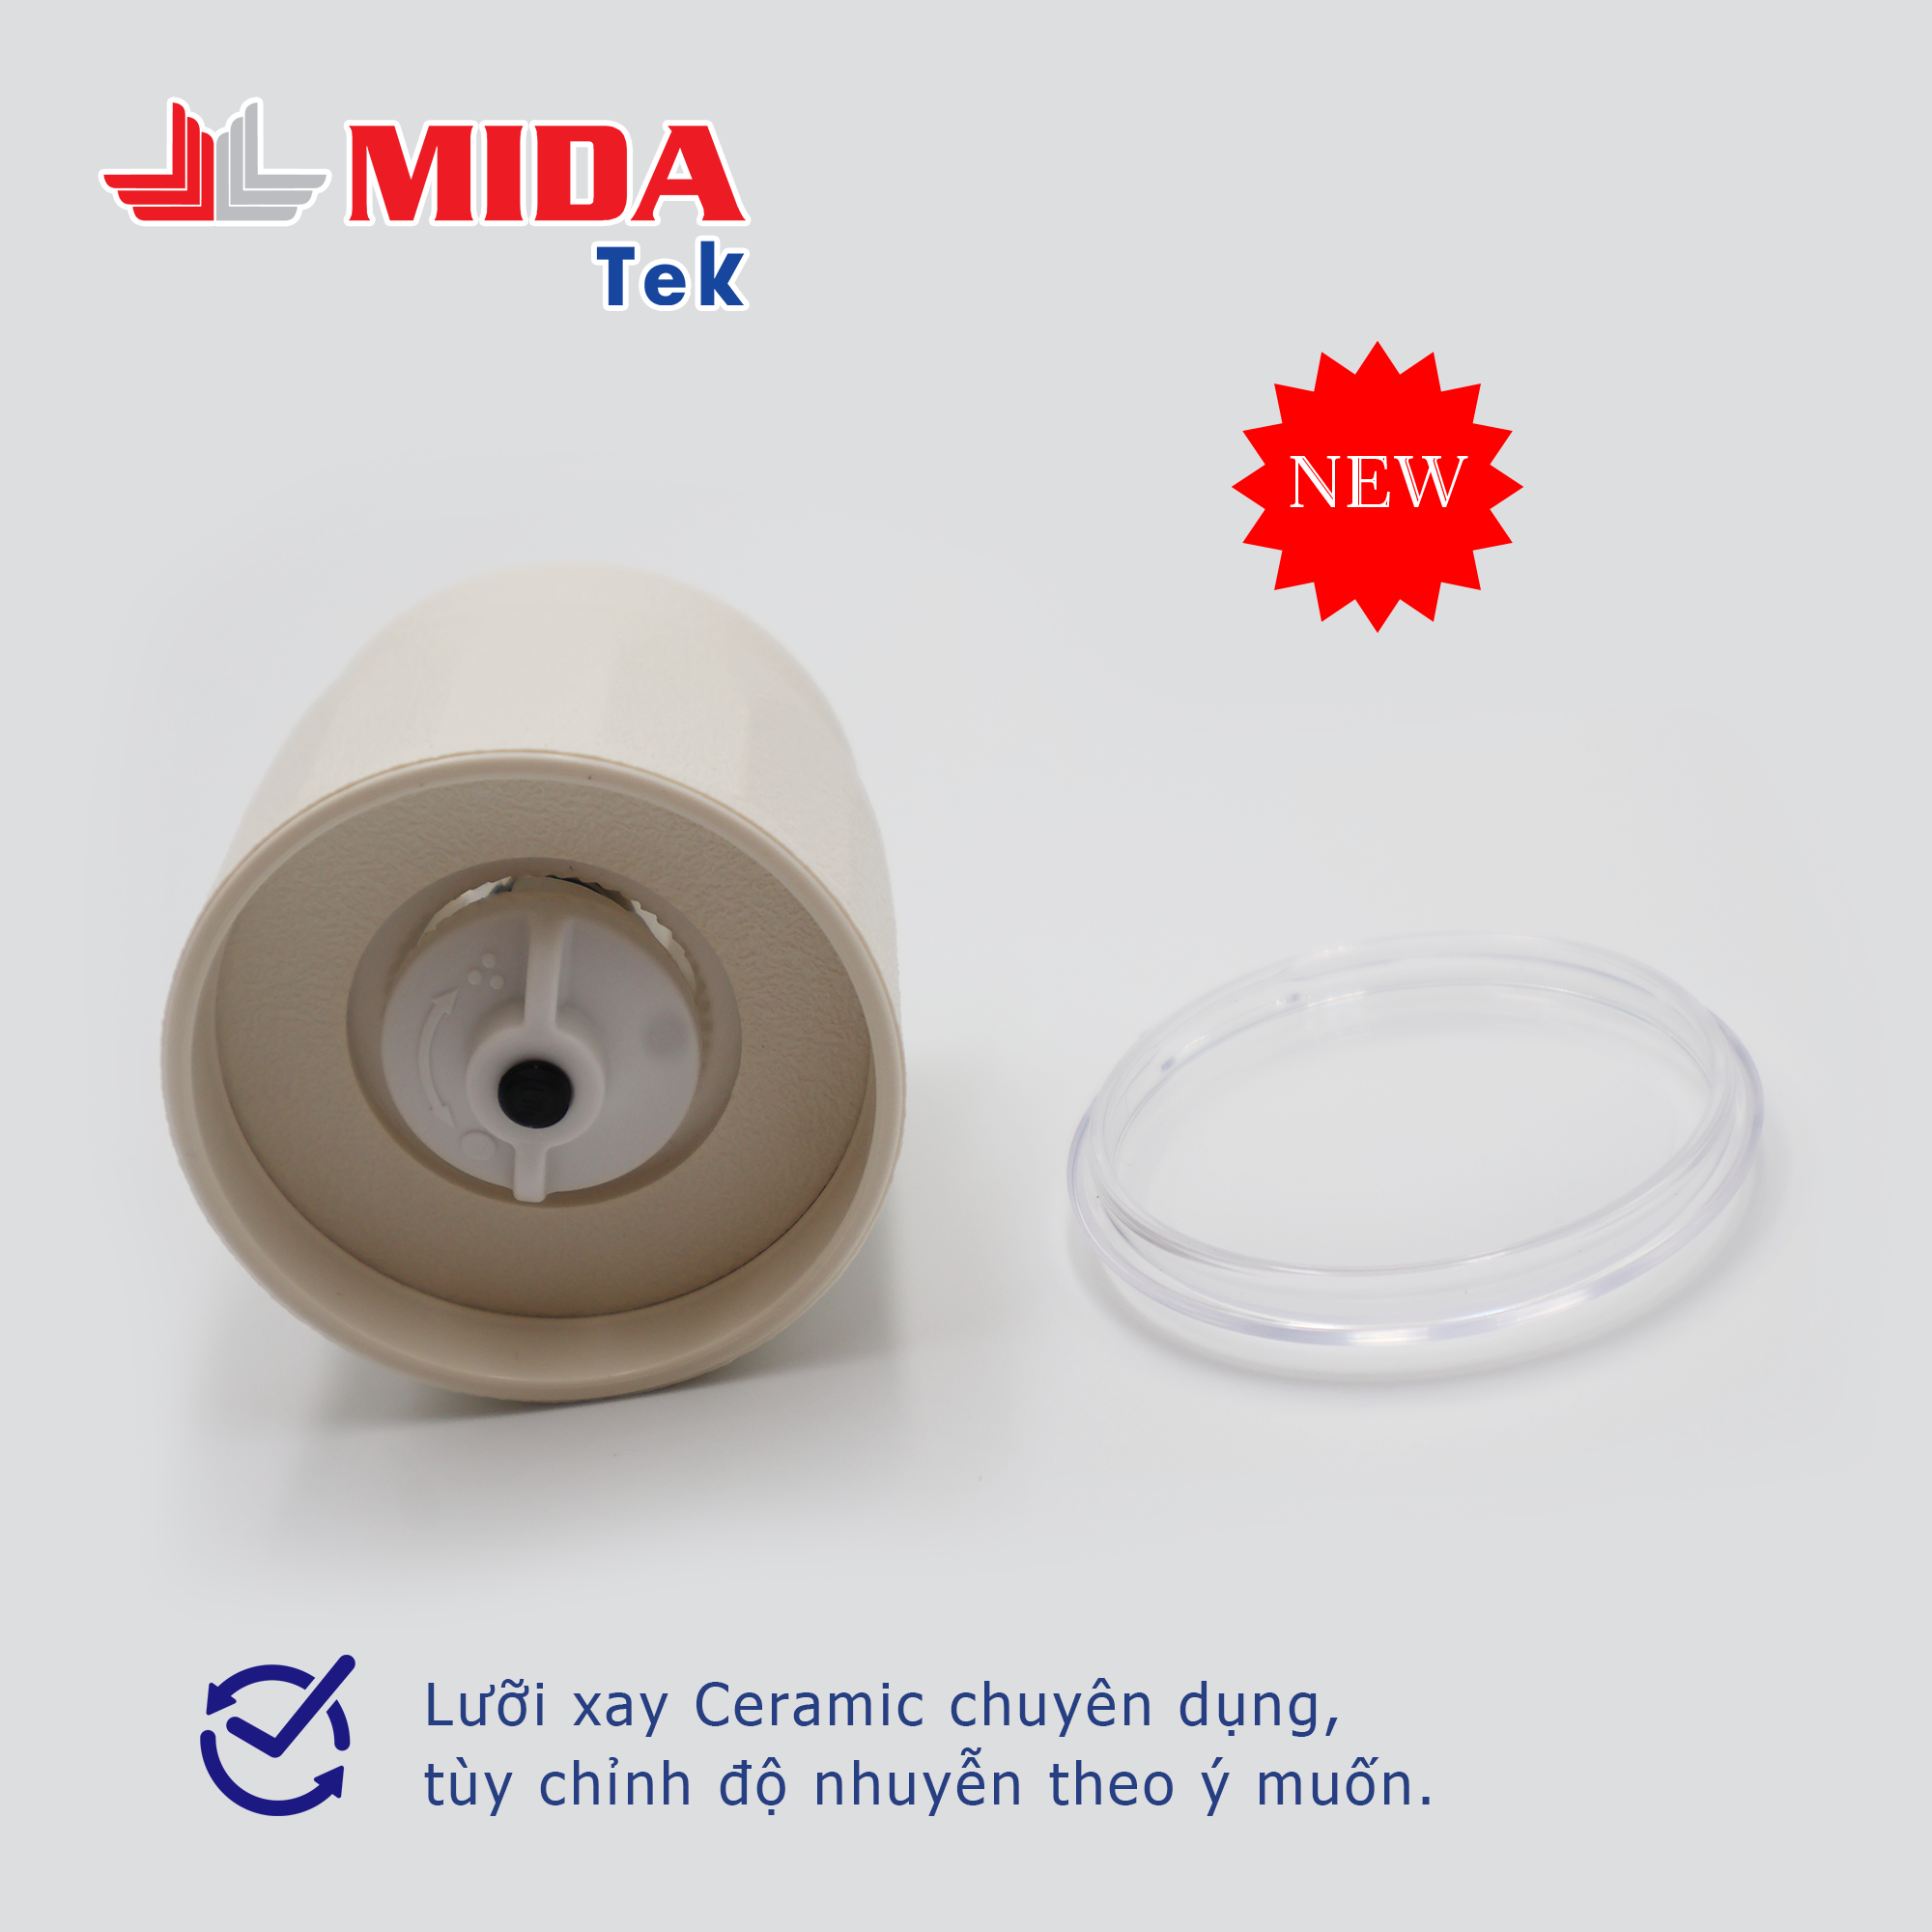 Bộ 2 Nắp xay tiêu MIDATEK cối xay ceramic Màu Kem cho hũ nhựa đường kính 38mm